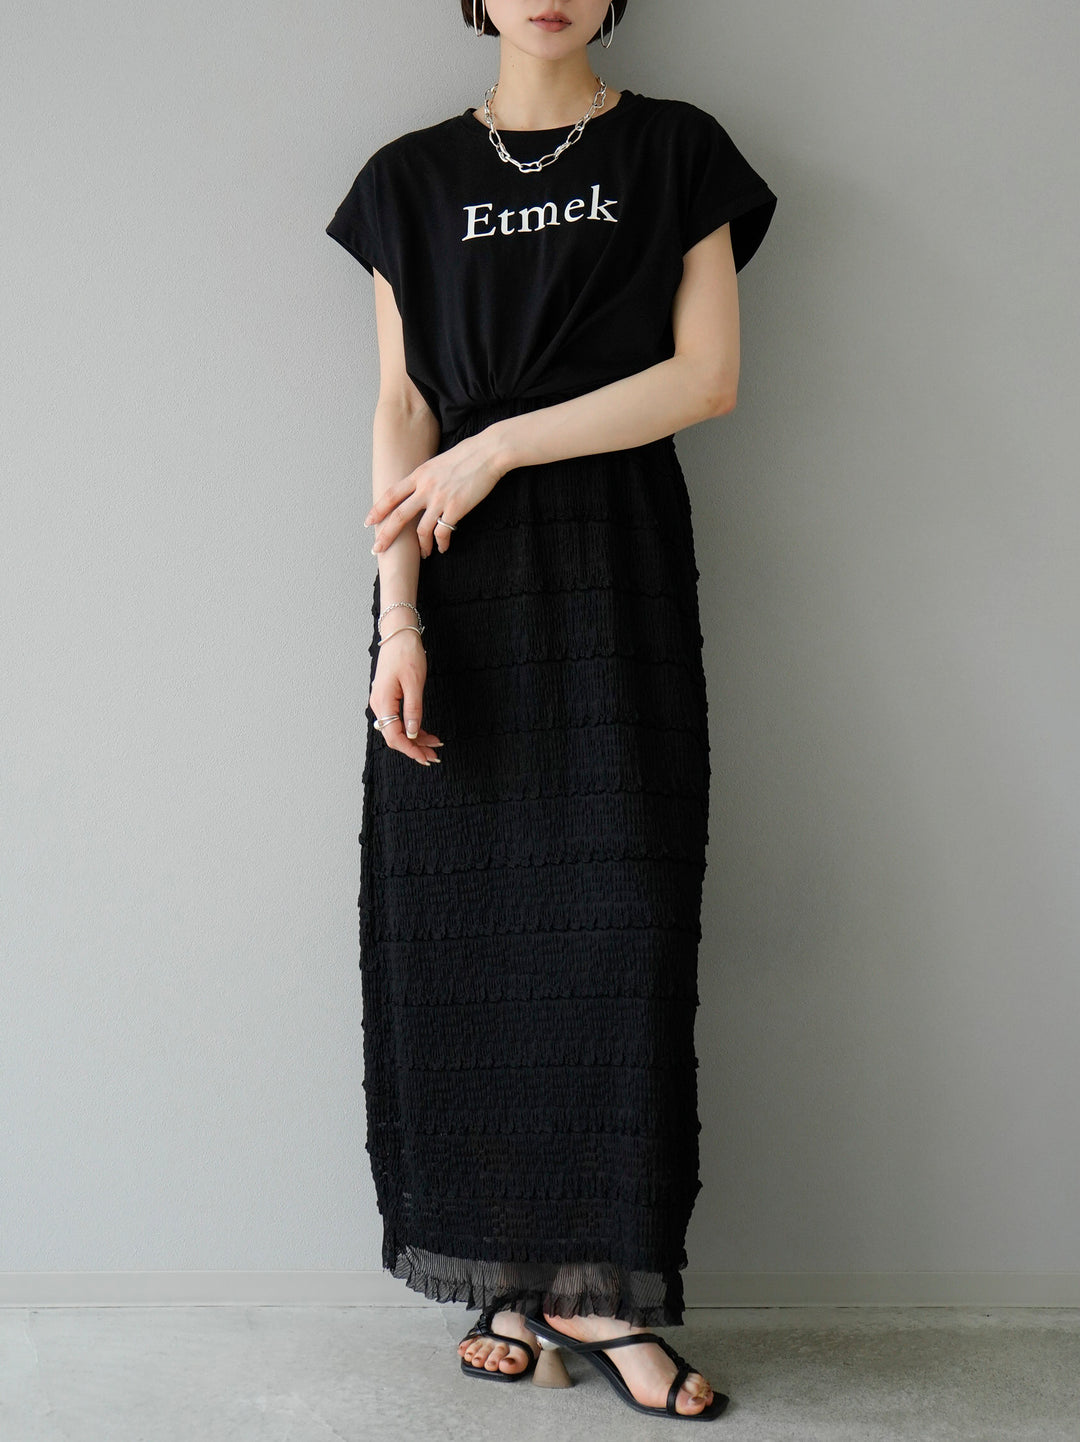 [予約]'Etmek'プリントフレンチスリーブTシャツ/ブラック